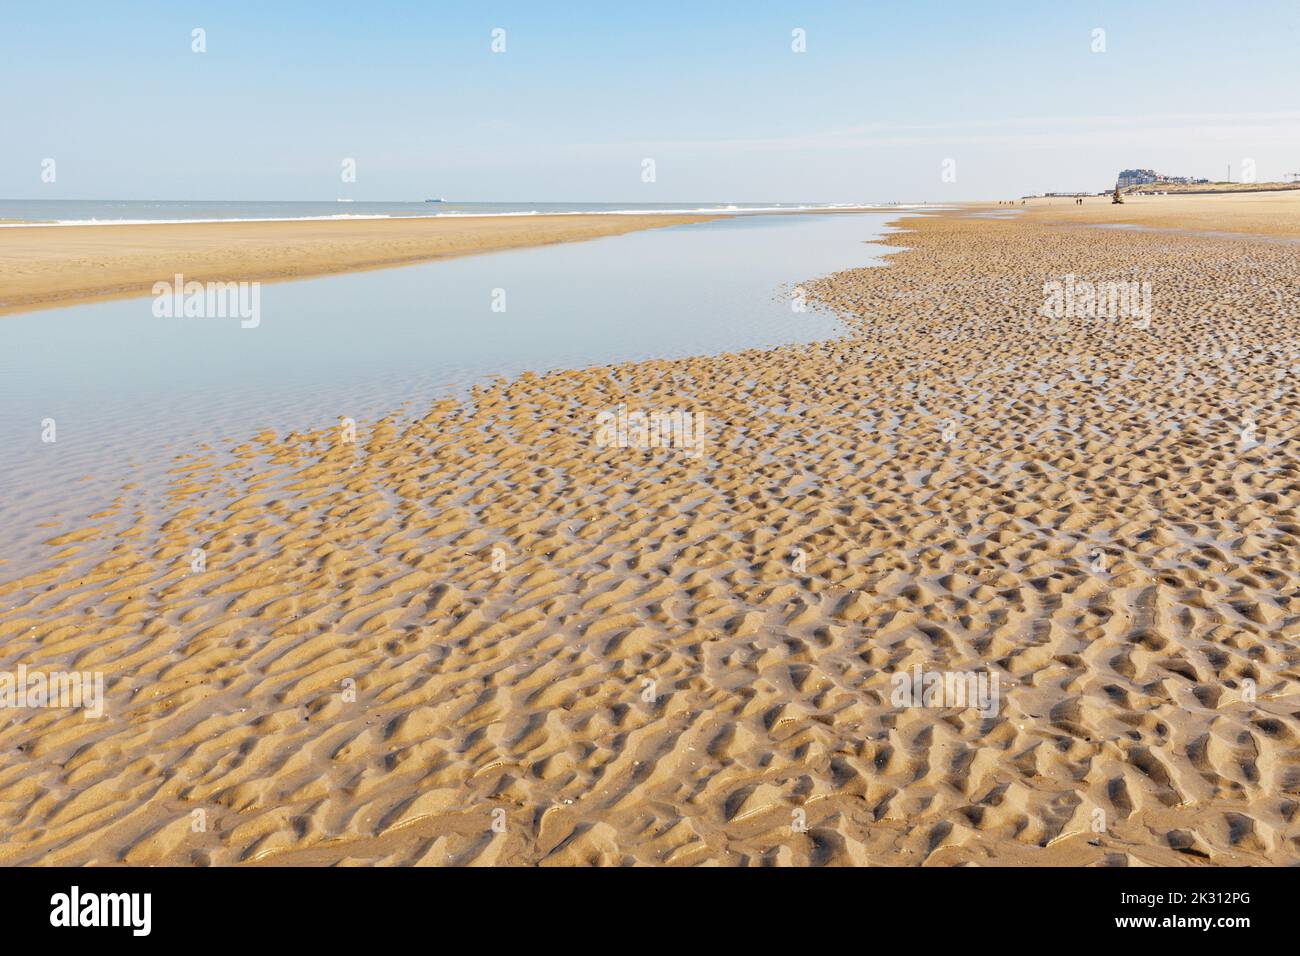 Belgique, Flandre Occidentale, plage ondulée à marée basse Banque D'Images